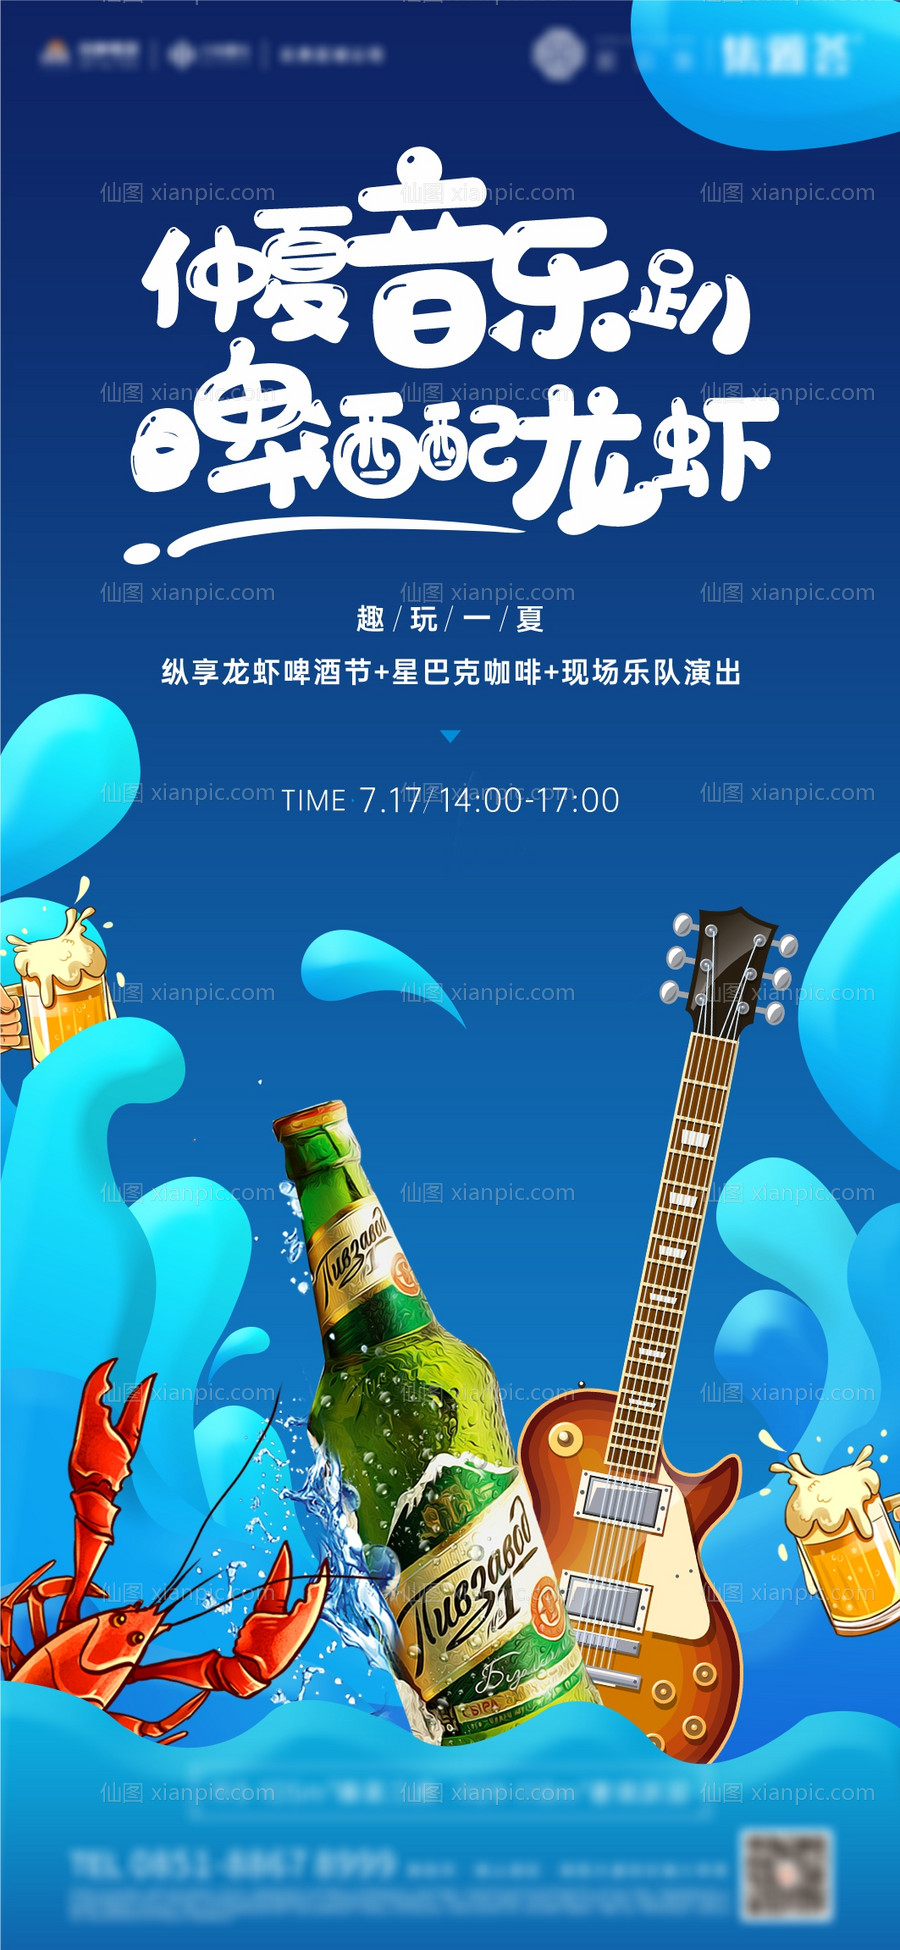 素材乐-地产夏日啤酒龙虾音乐节活动刷屏